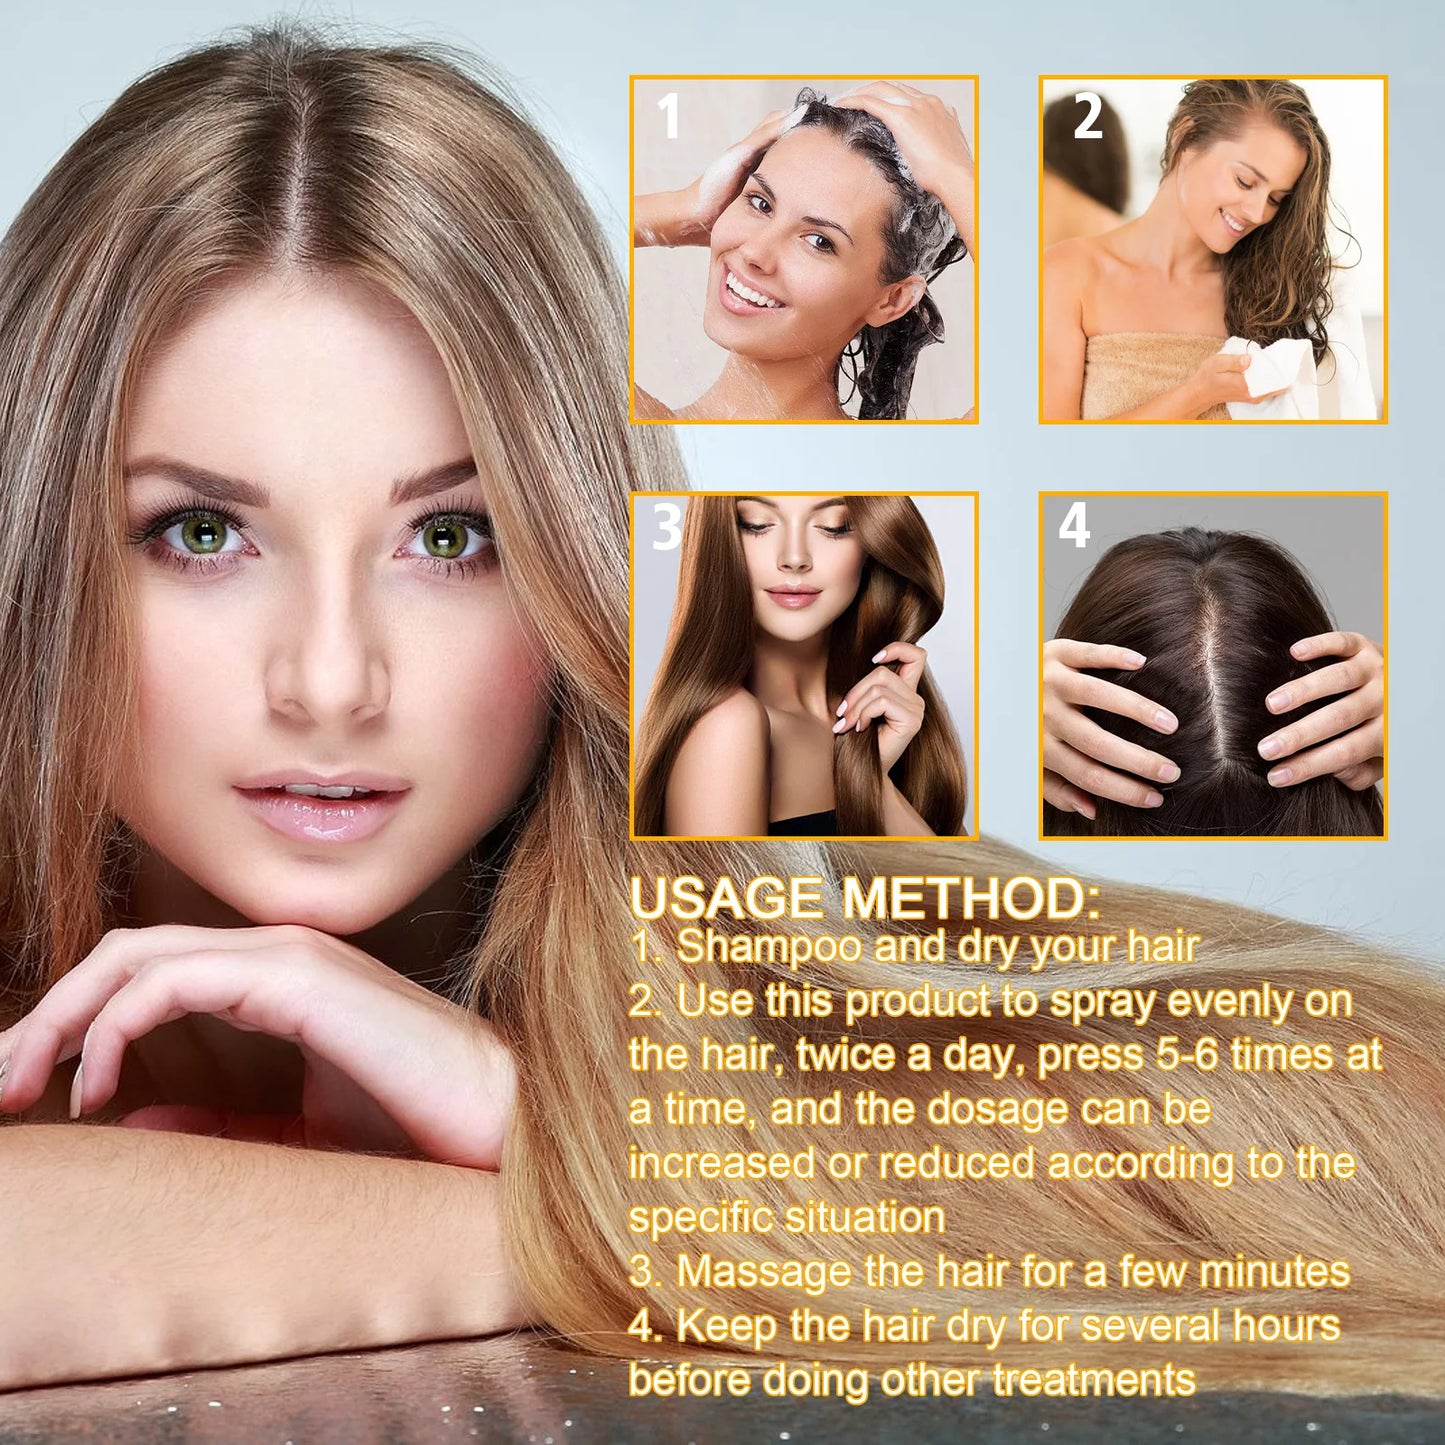 Biotin Hair Regrowth Spray Anti Hair Loss Treatment Oil Dry Frizzy Nourish Scalp Damaged Repair Serum Hair Care Serum Oil